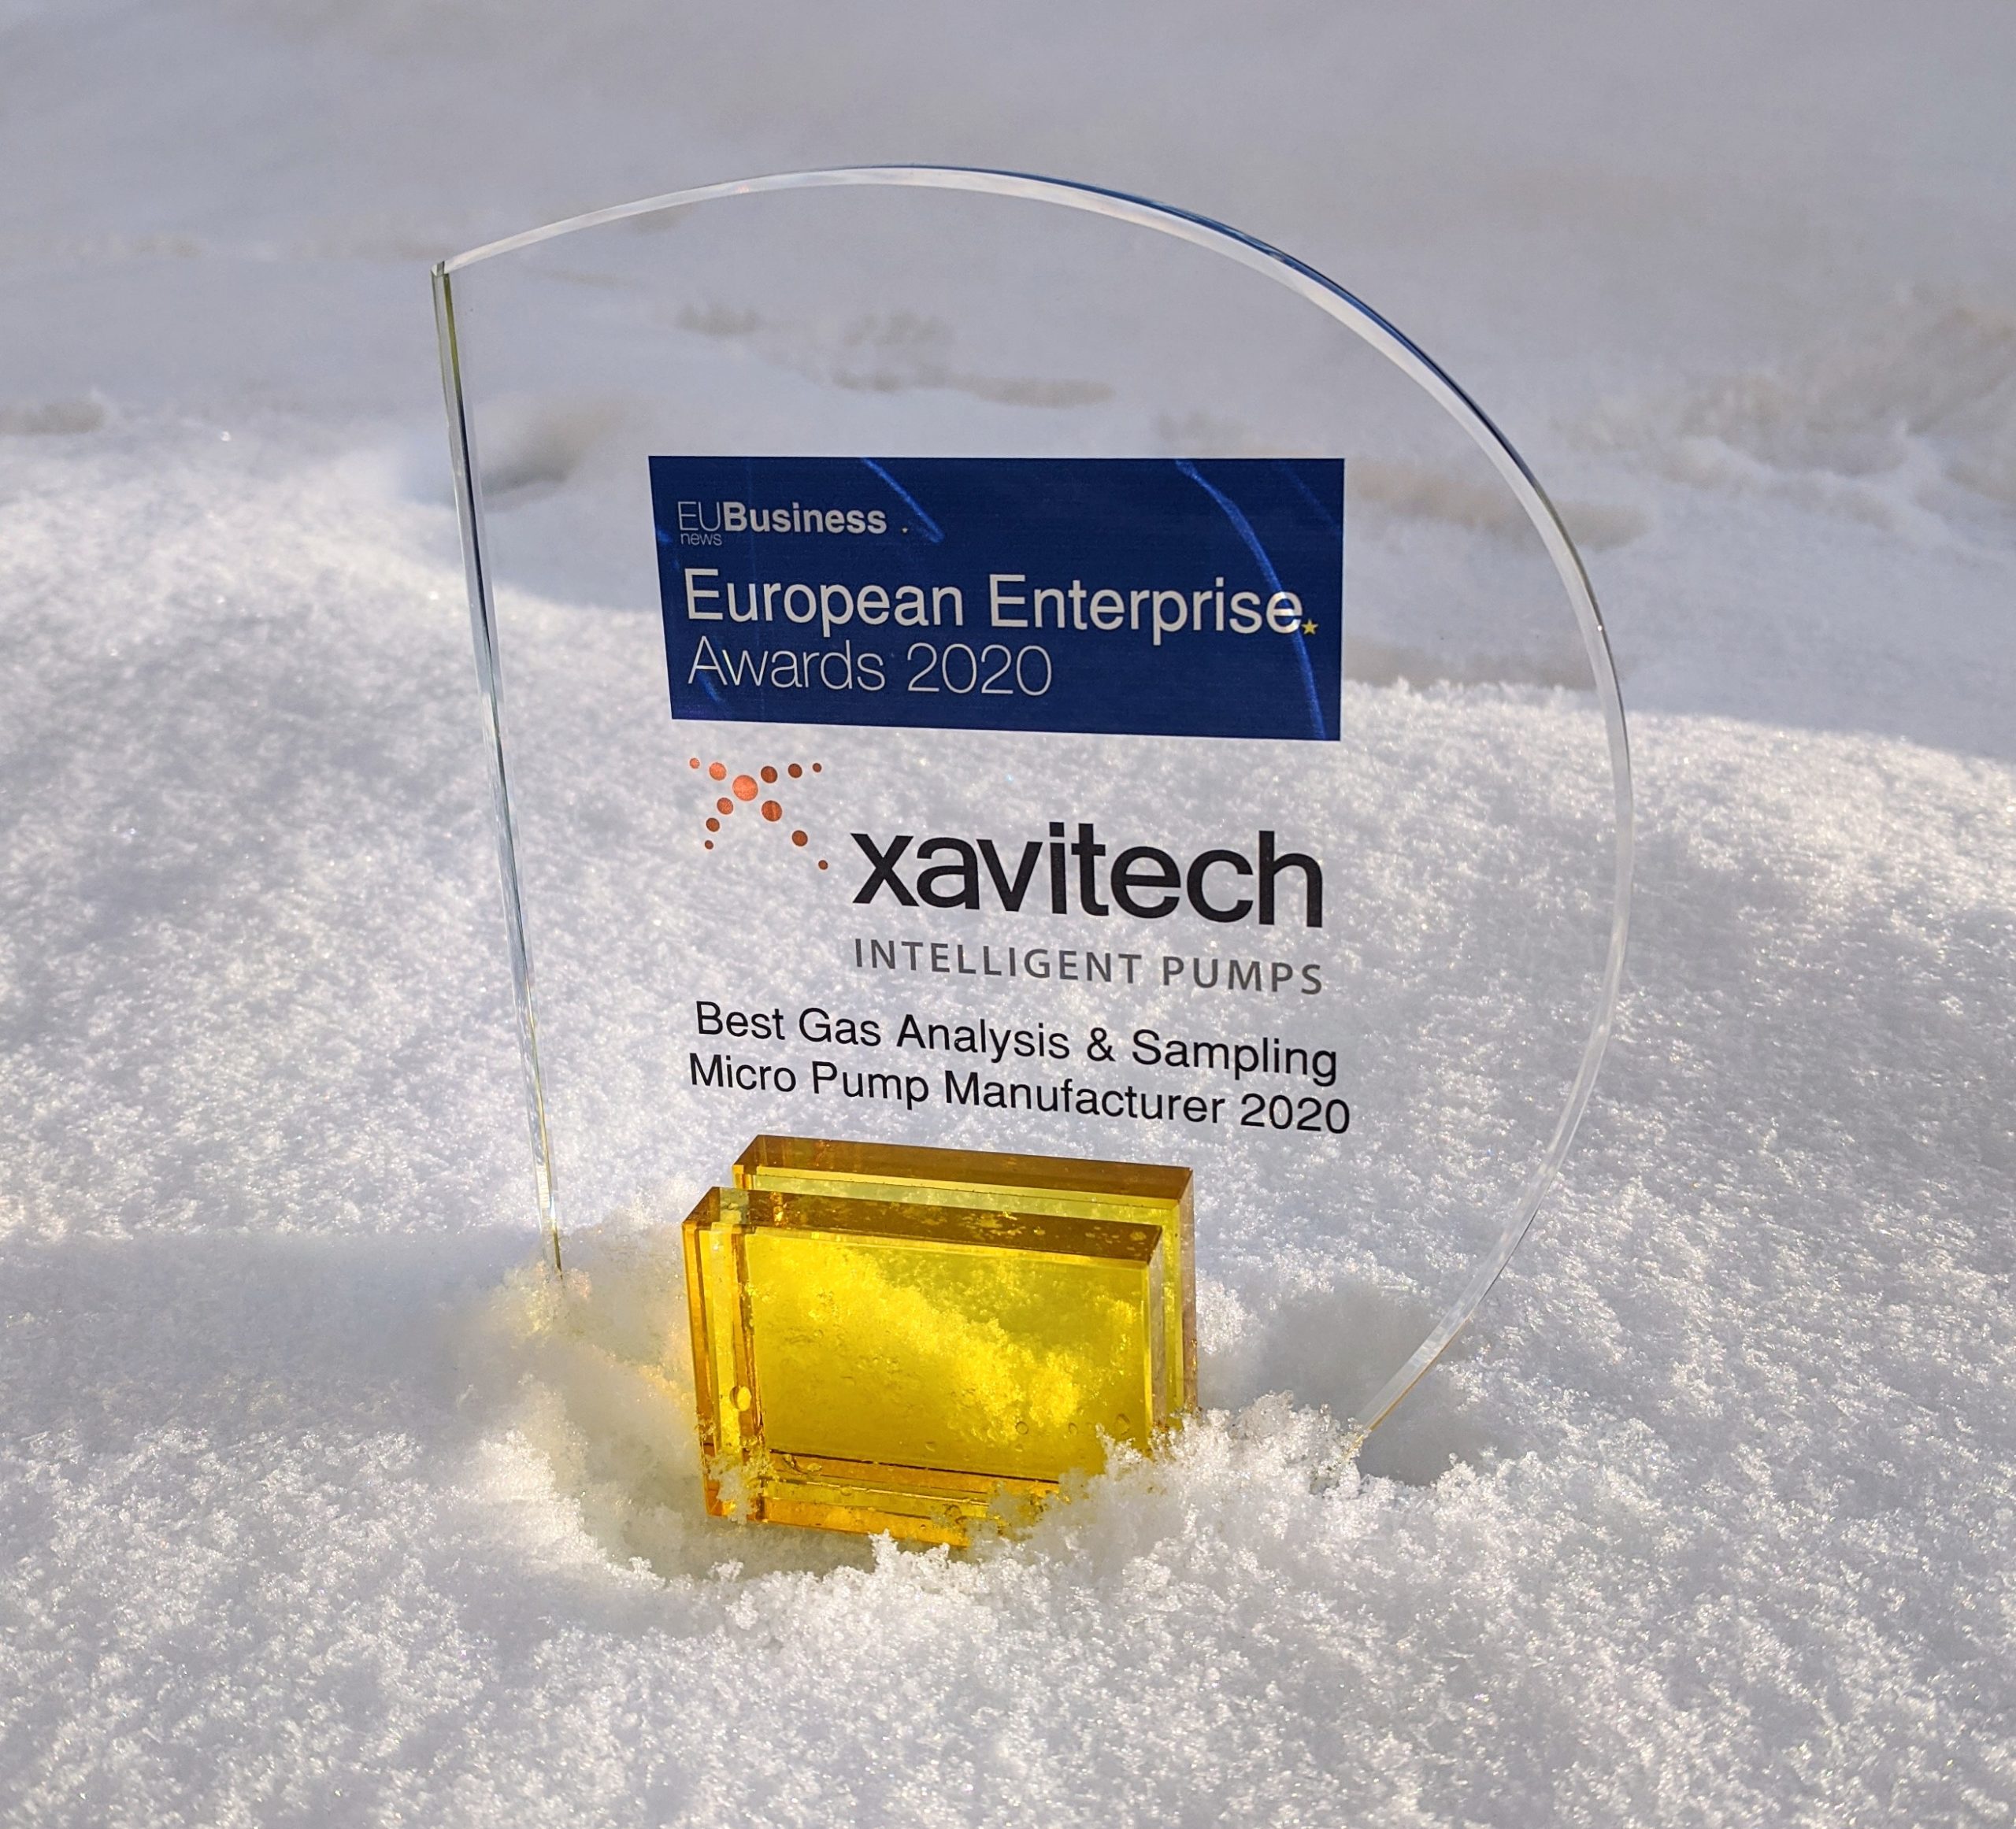 European Enterprise Award in the snow